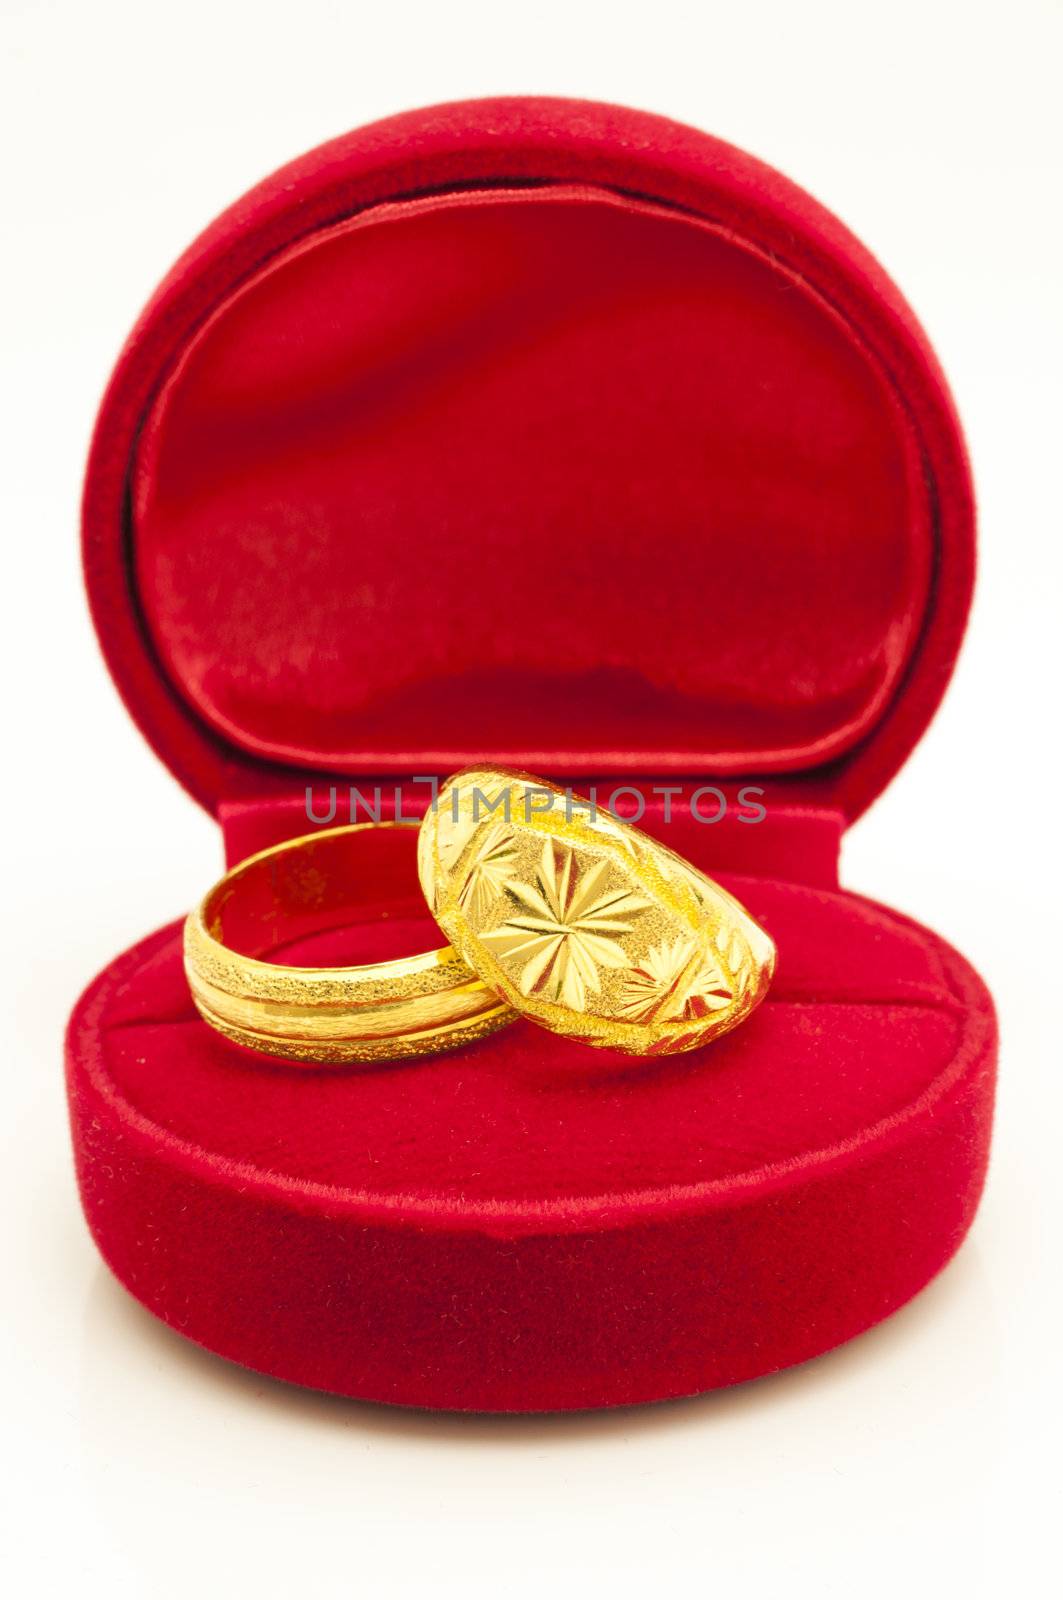 Red velvet box with golden rings